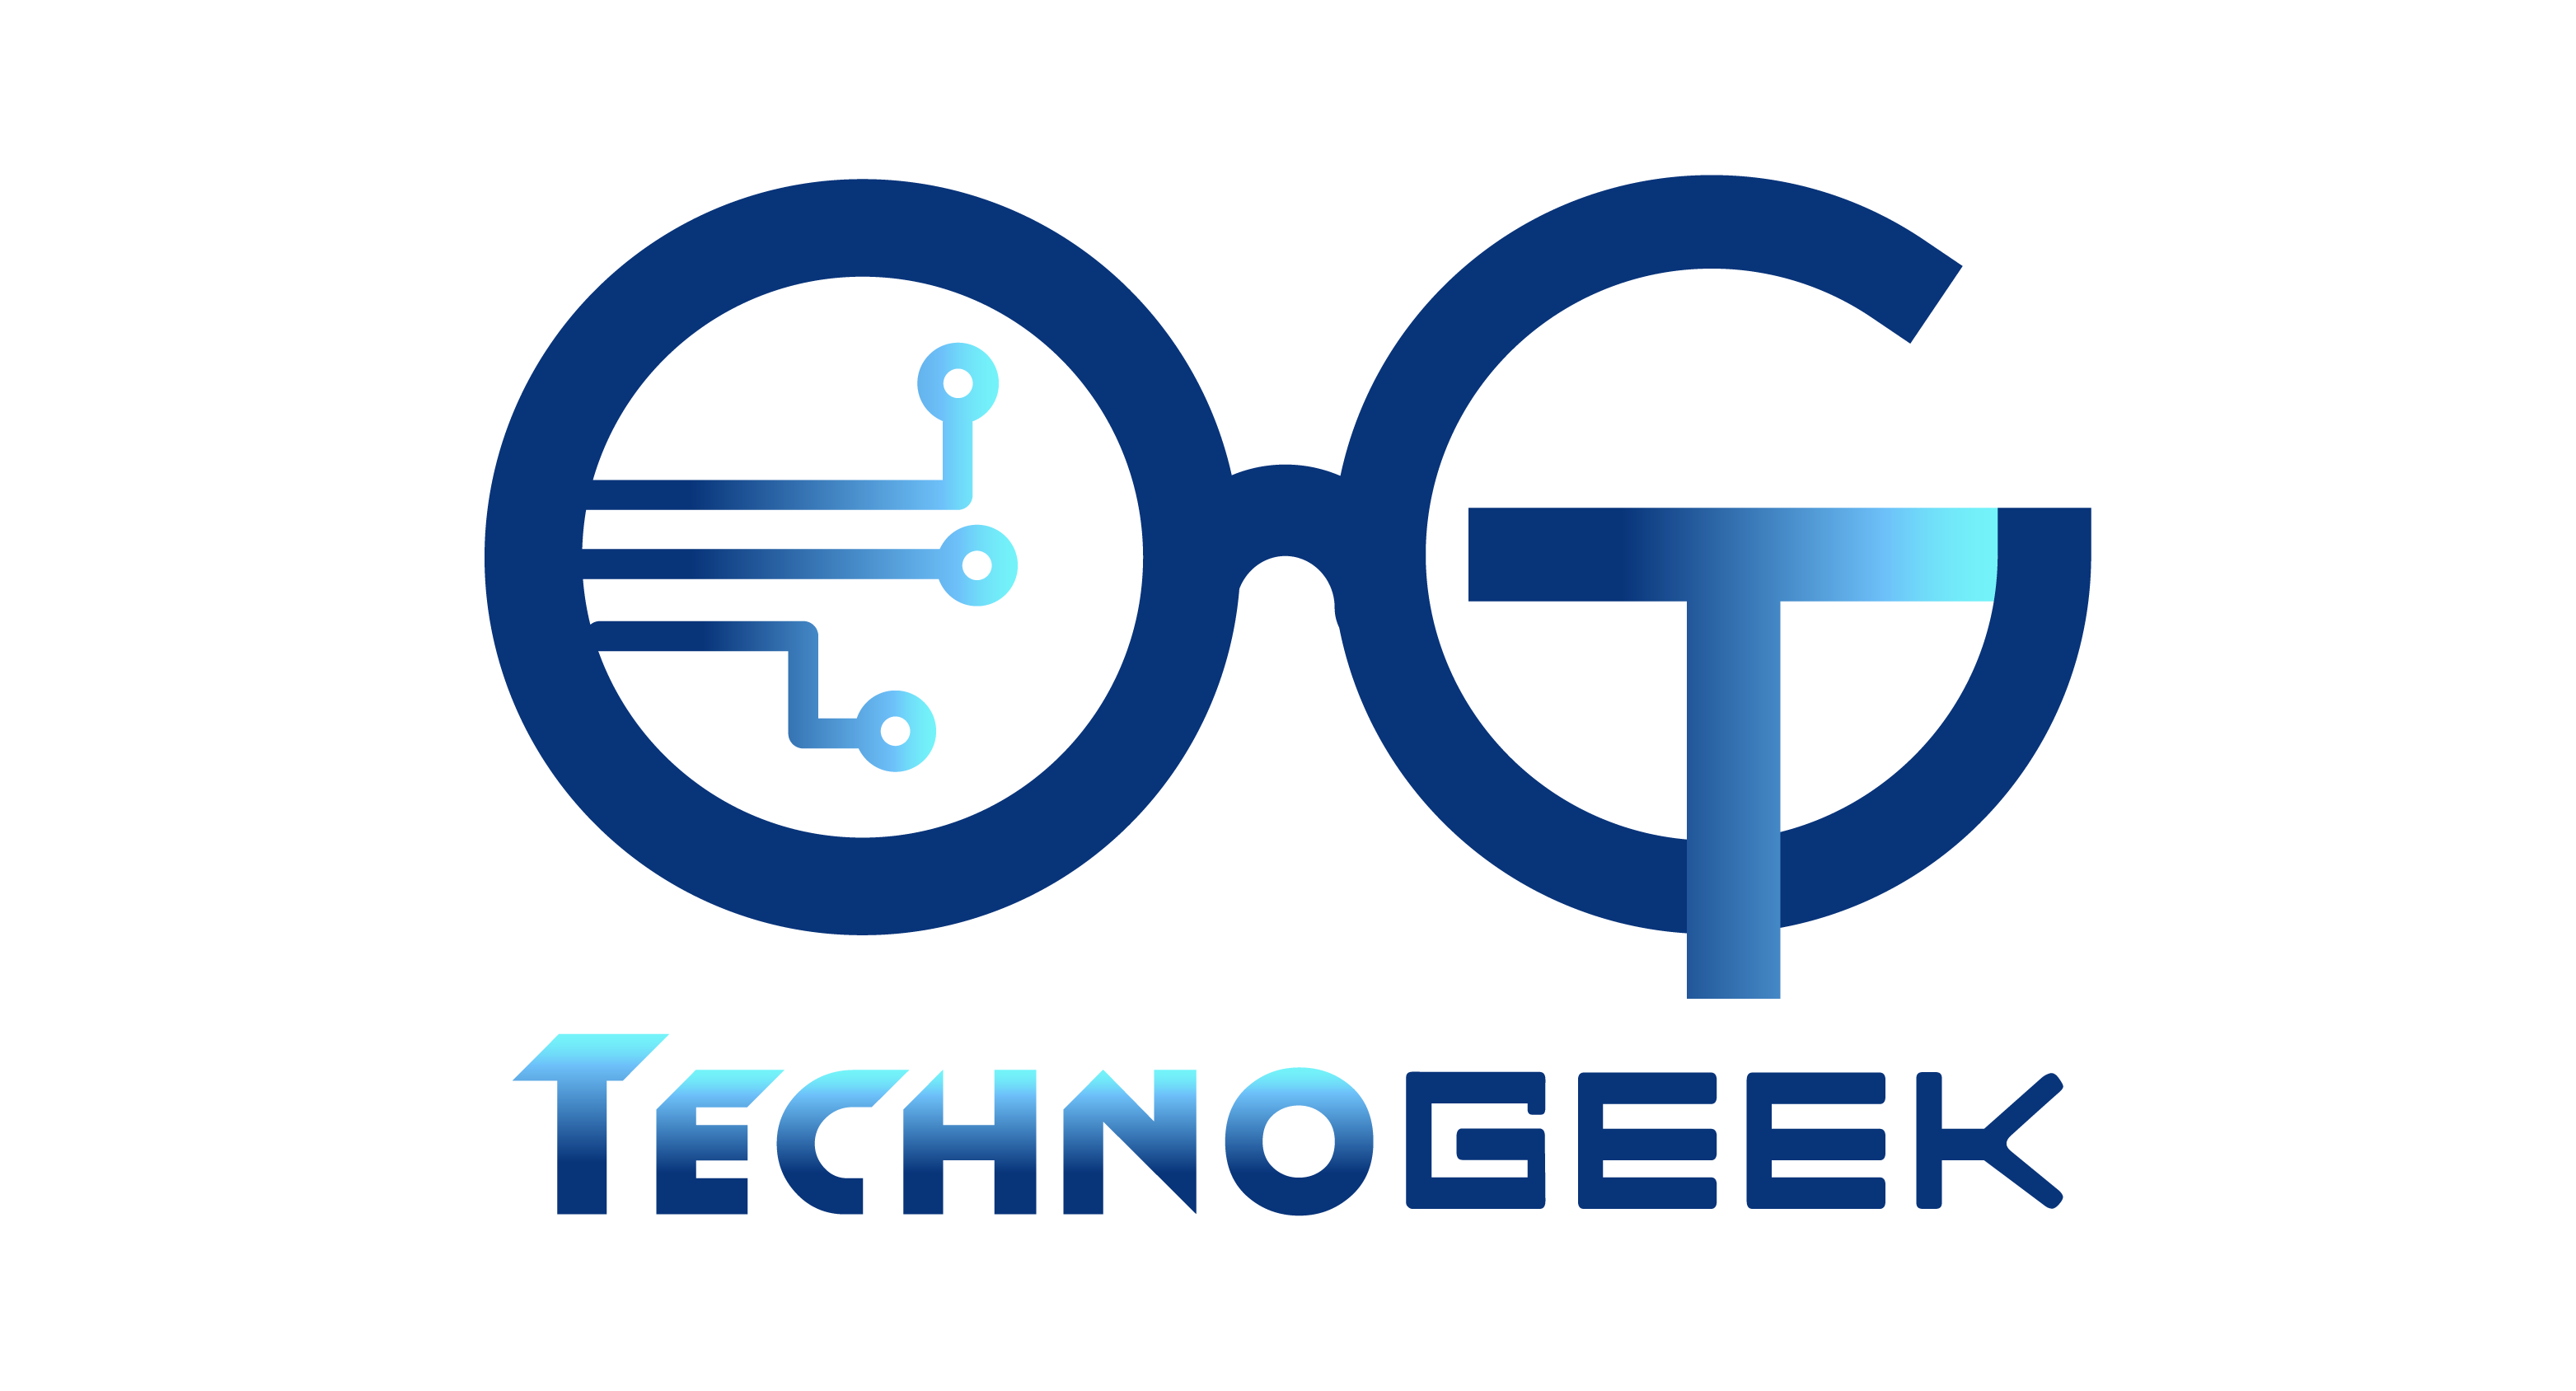 TechnoGeek